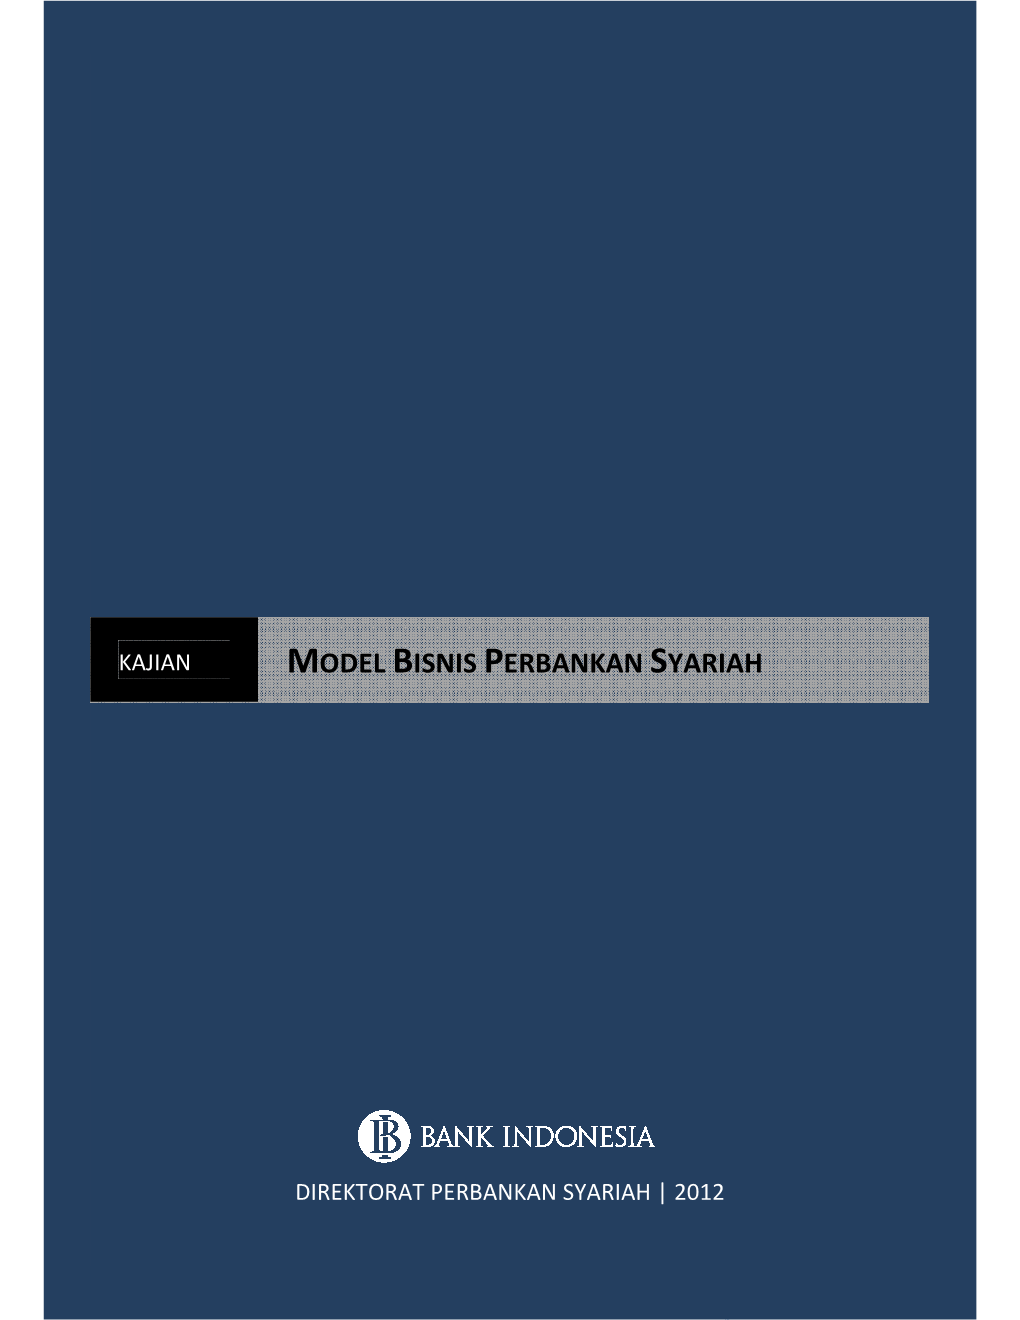 Model Bisnis Perbankan Syariah Indonesia Customer Segment